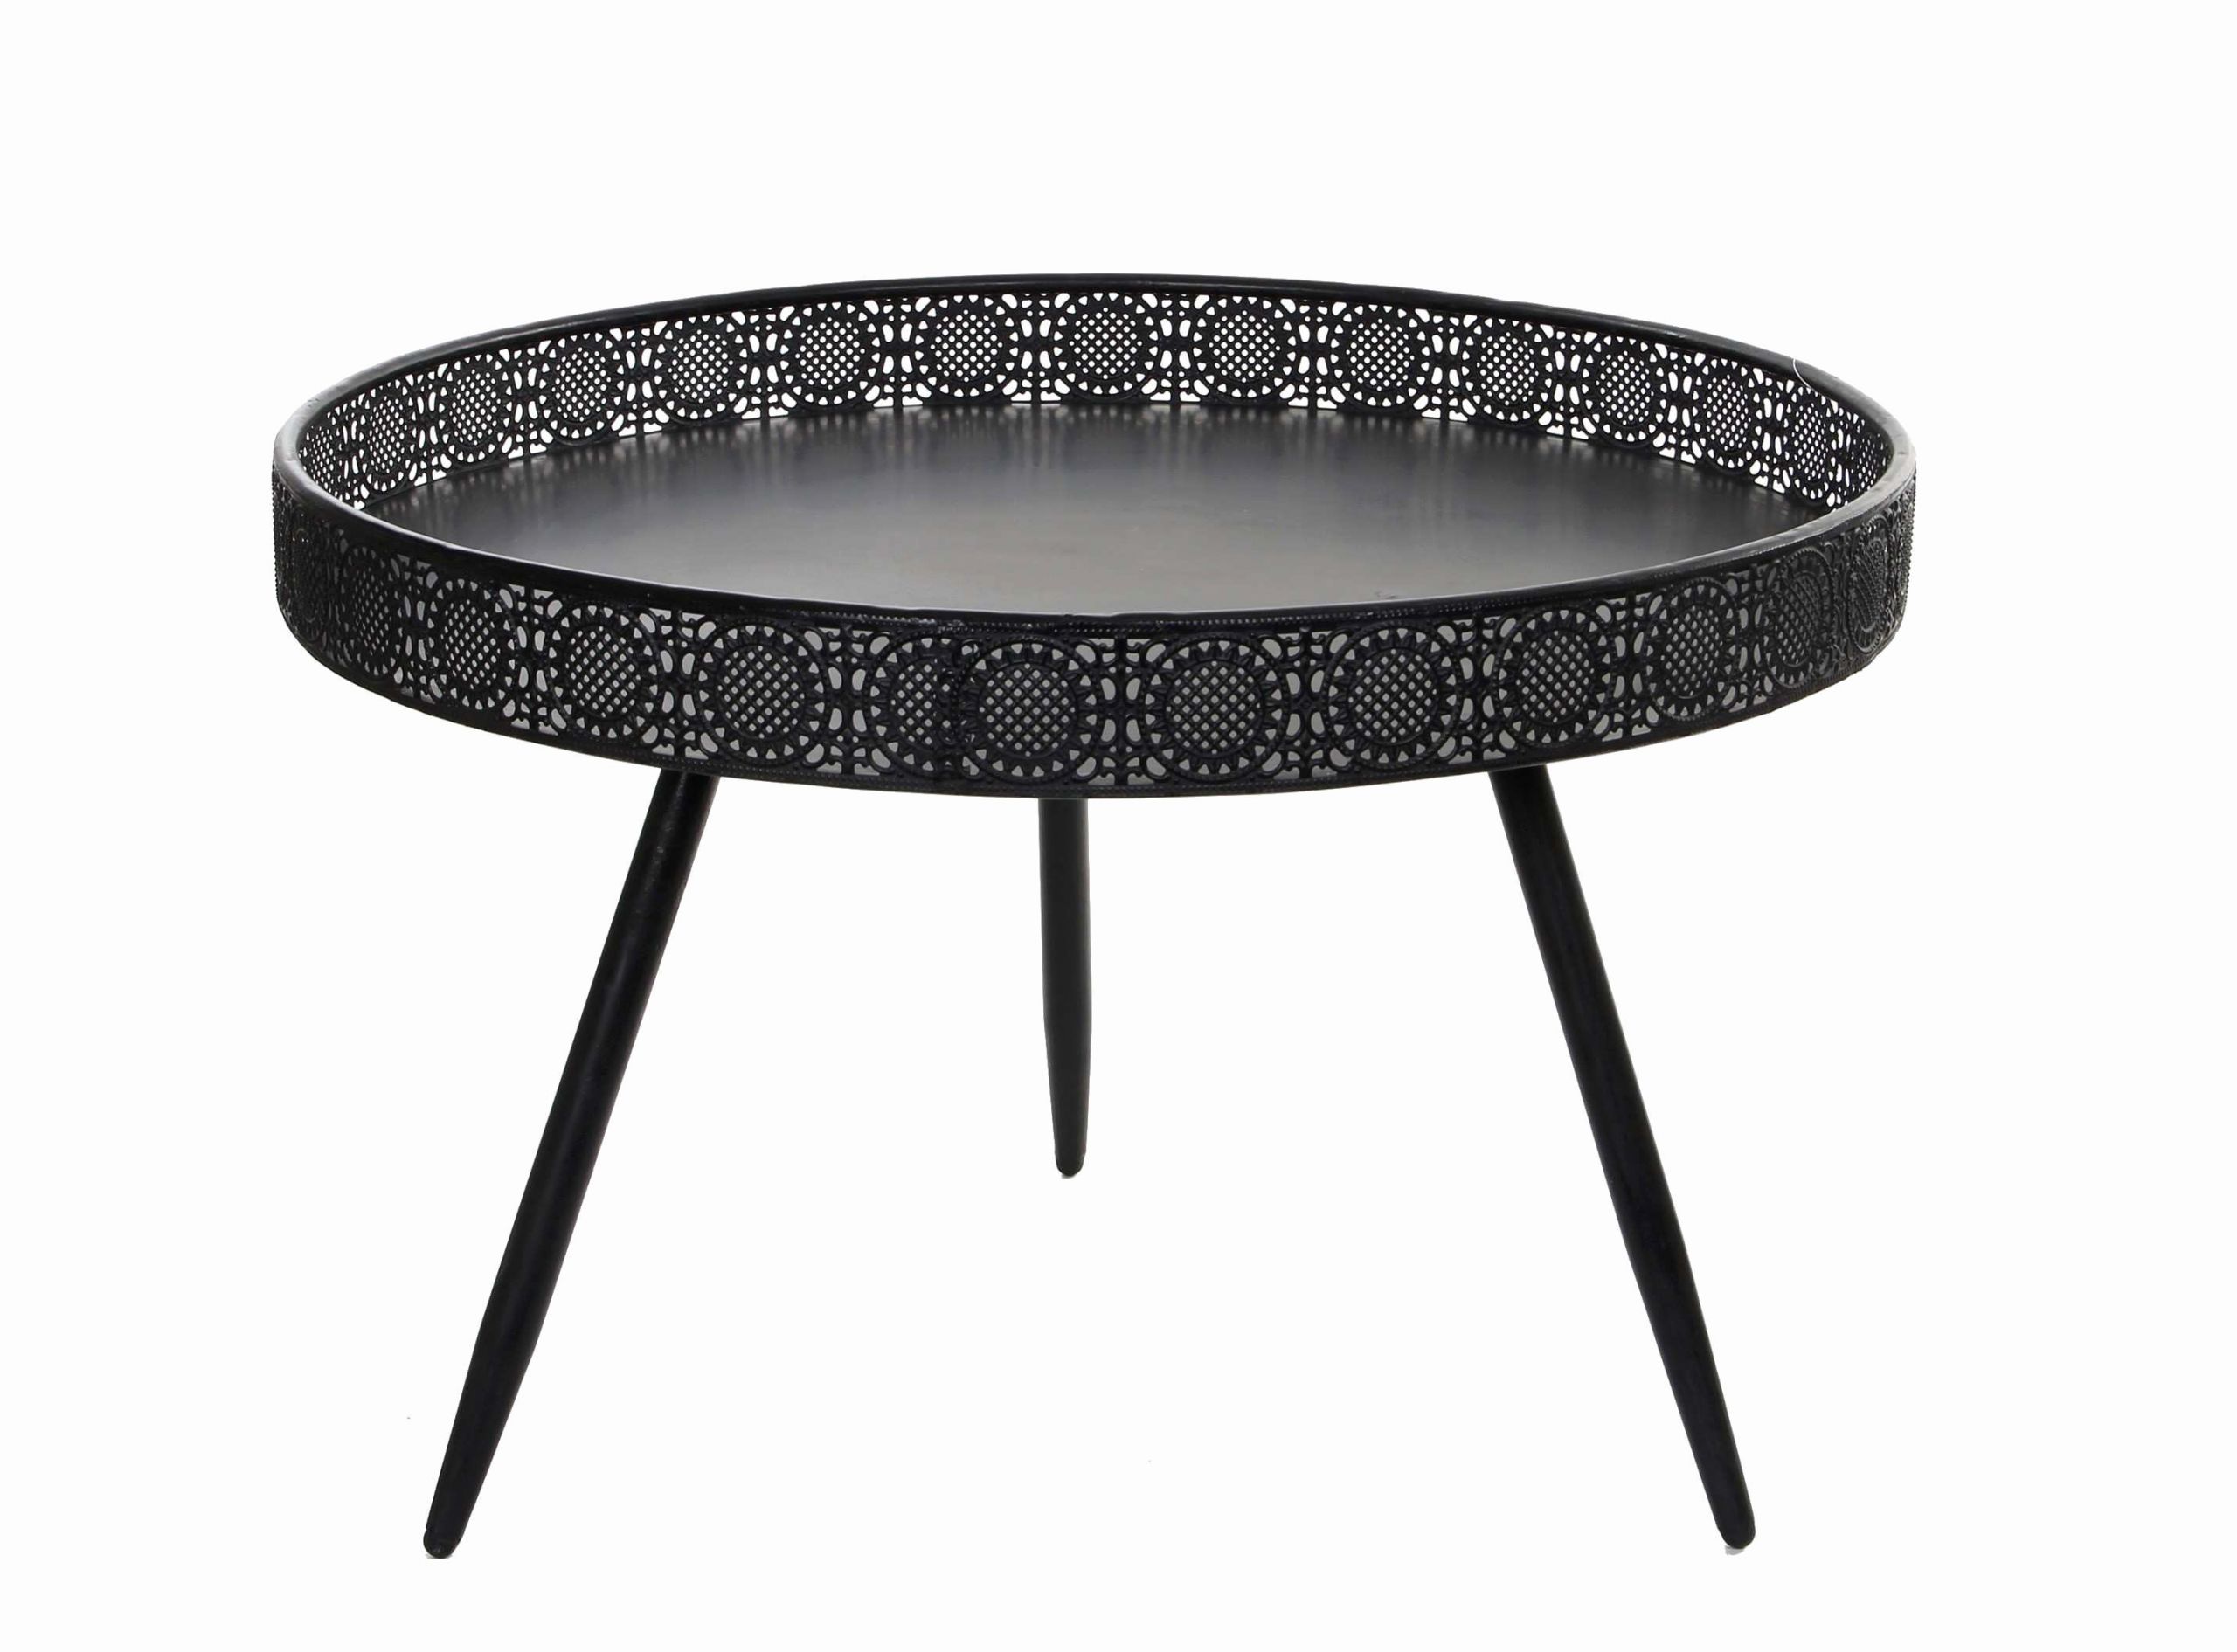 Chaise Table Best Of Table Pliante Cuisine Ikea Nouveau Unique Ikea Metal Table